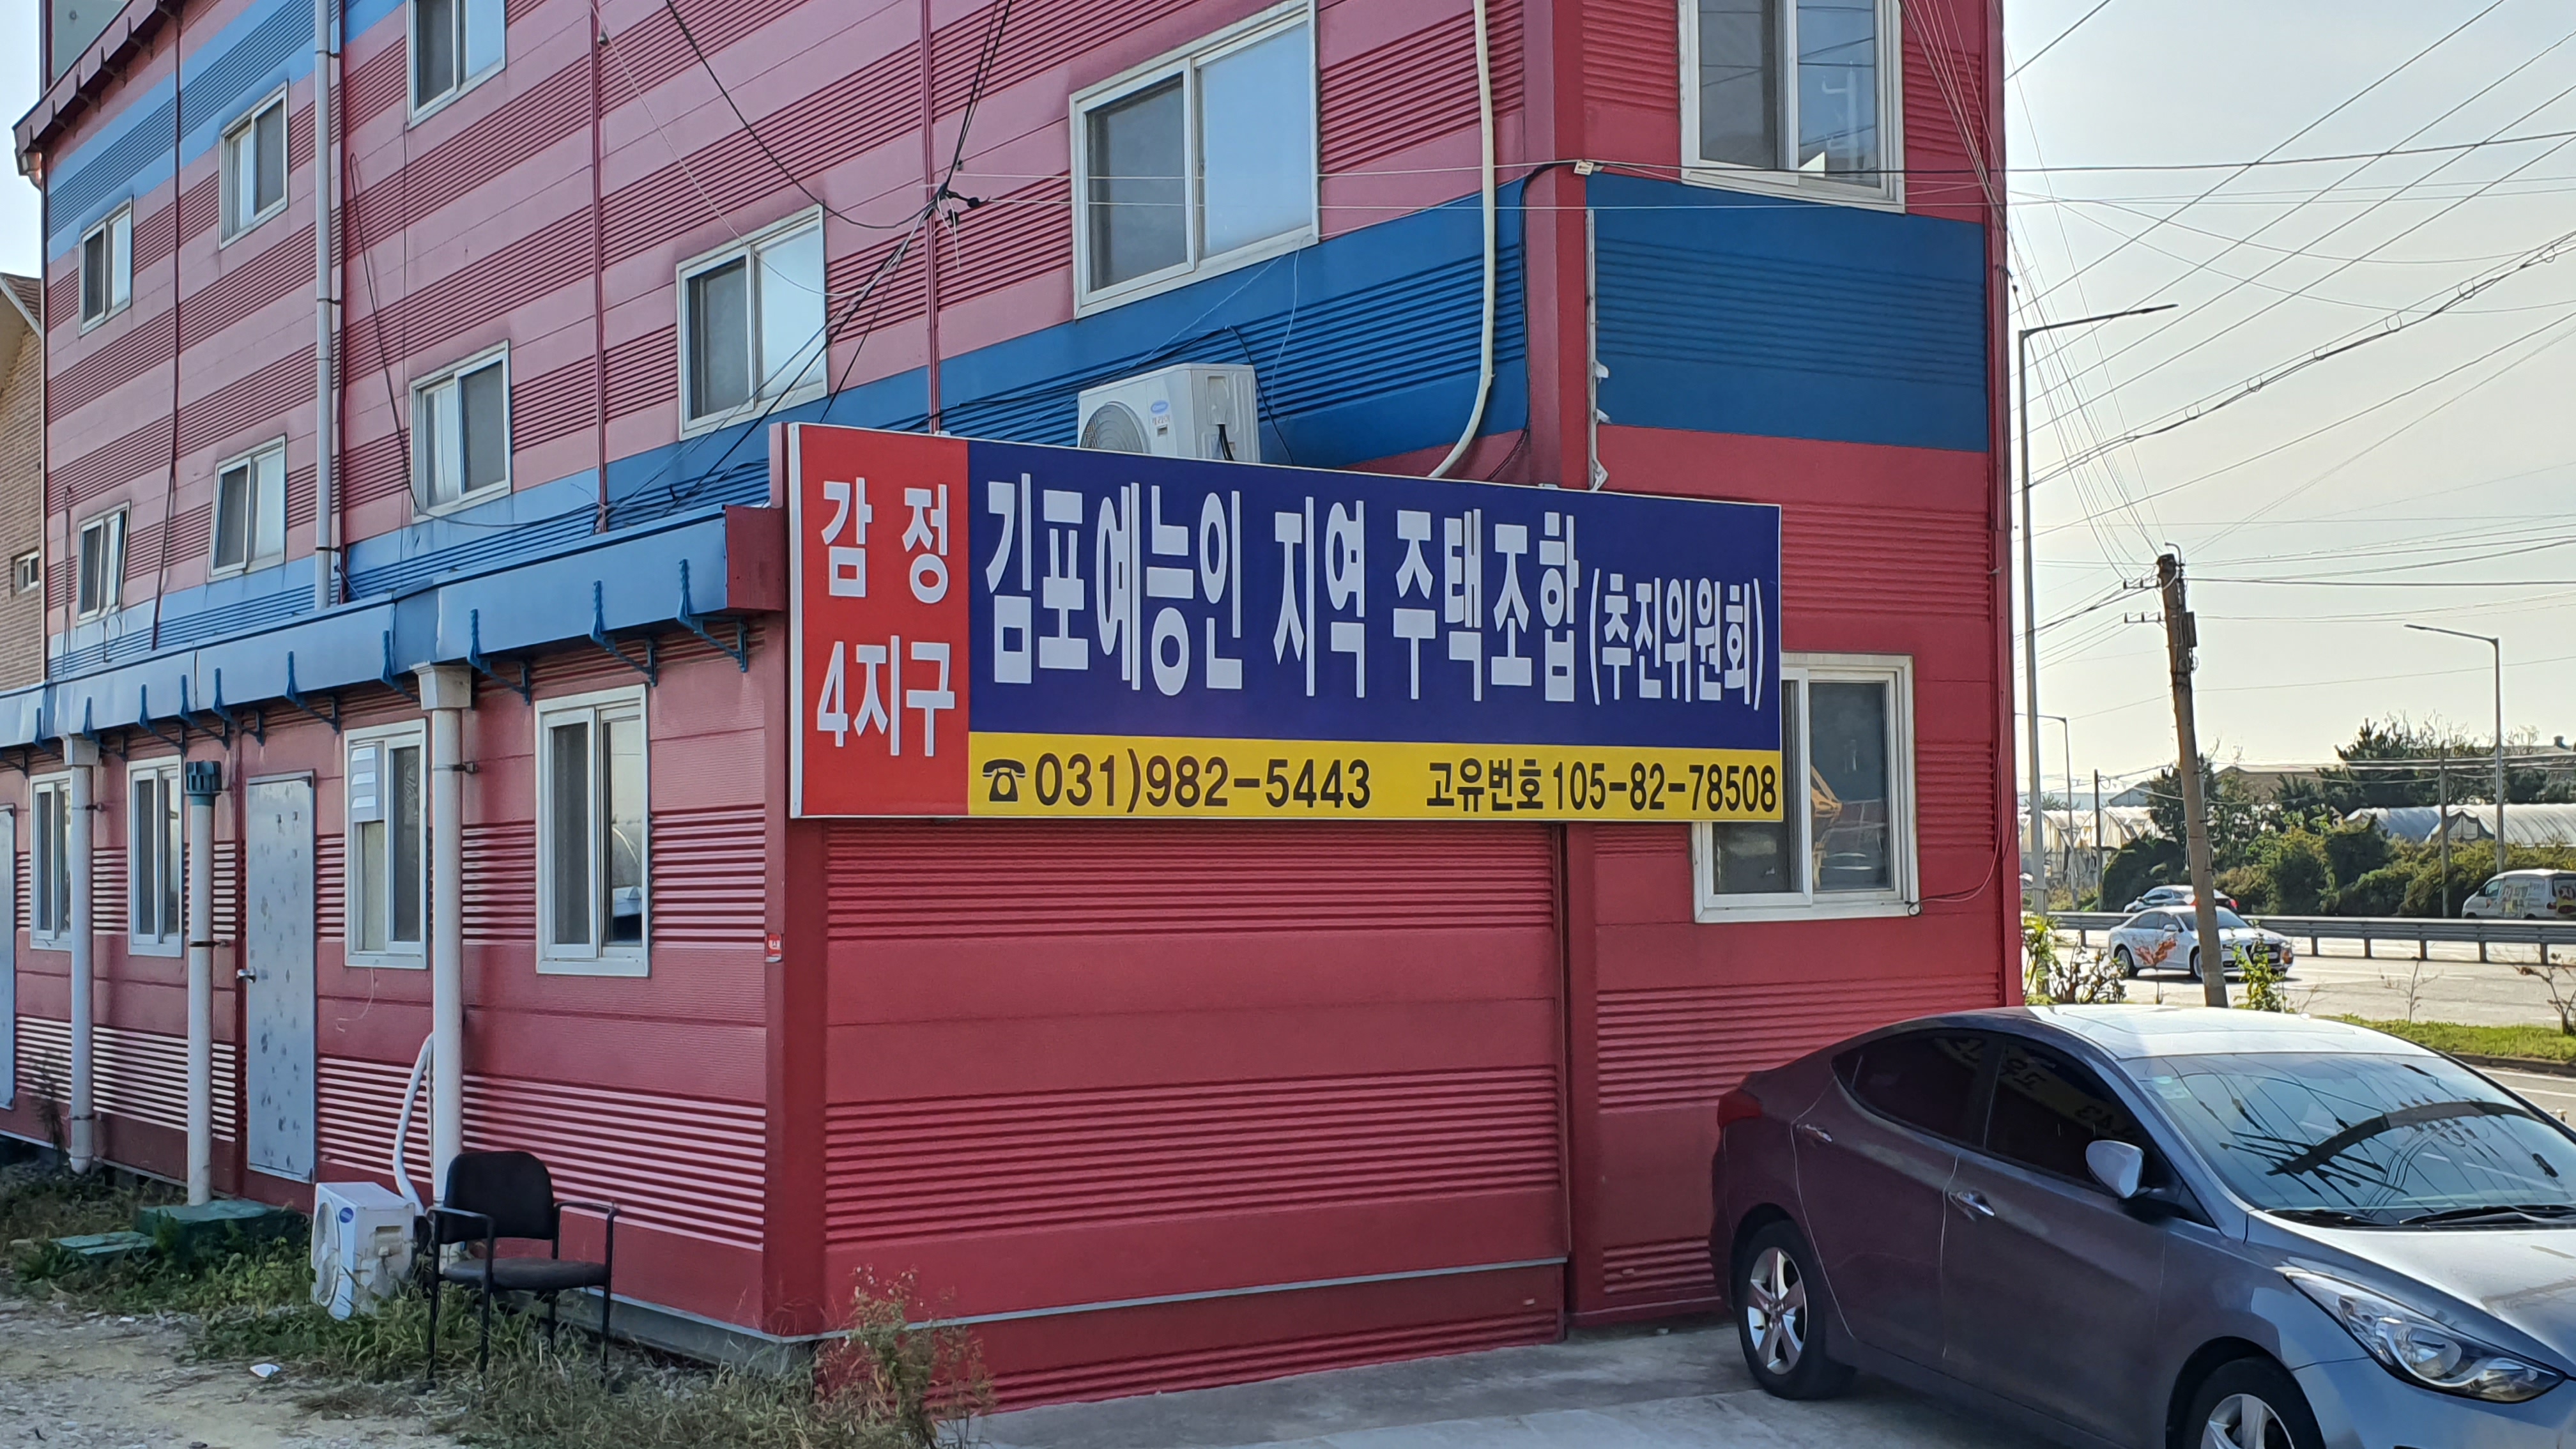 김포예능인지역주택조합 사무실이 입주해 있는 사우동 572-5번지 건물.1층창고를 사무실로 무단 용도변경해 사용하다 적발돼 원상복구 시정명령을 받았다.